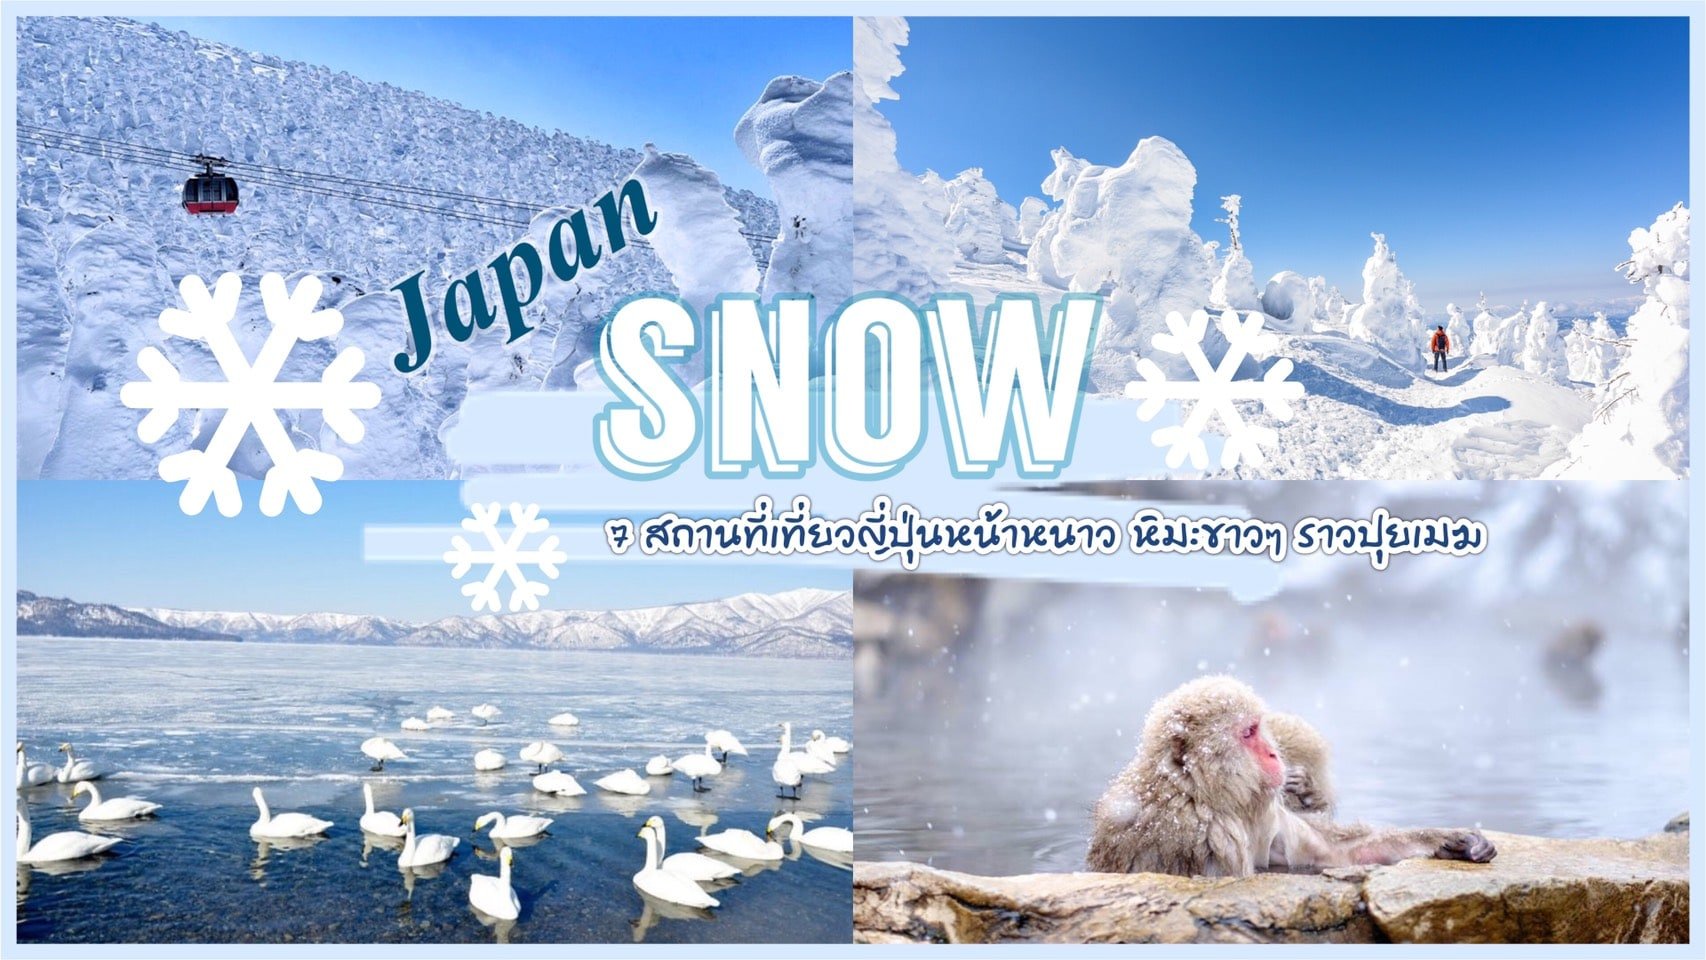 ทัวร์ญี่ปุ่น – ชี้เป้า 7 สถานที่ เที่ยวญี่ปุ่นหน้าหนาว หิมะขาวๆราวปุยเมฆ